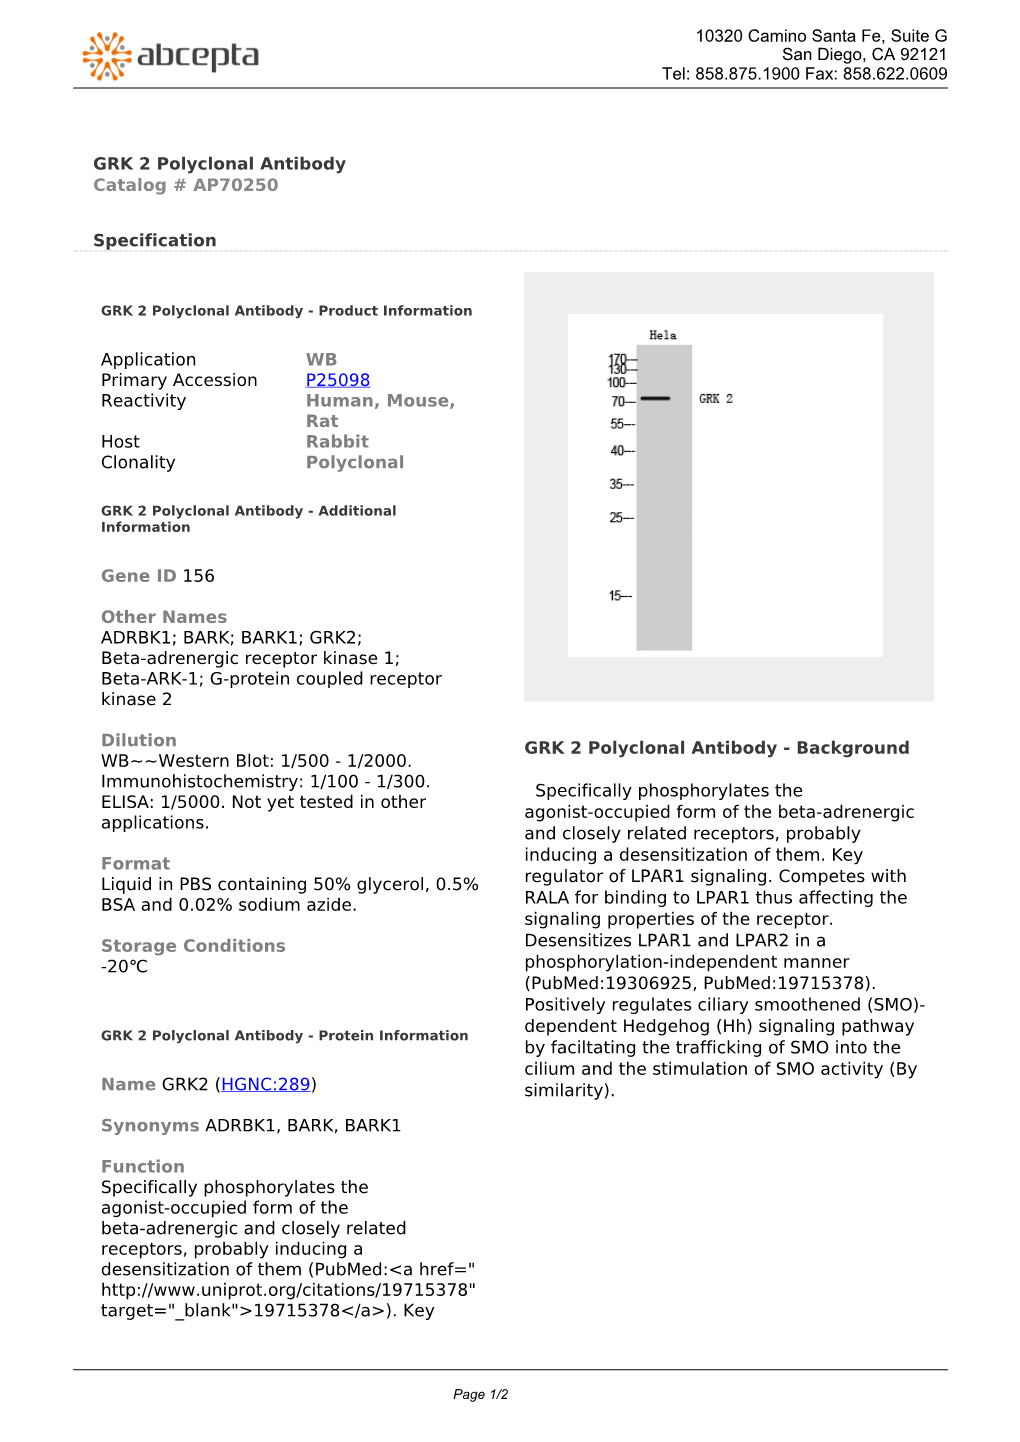 GRK 2 Polyclonal Antibody Catalog # AP70250